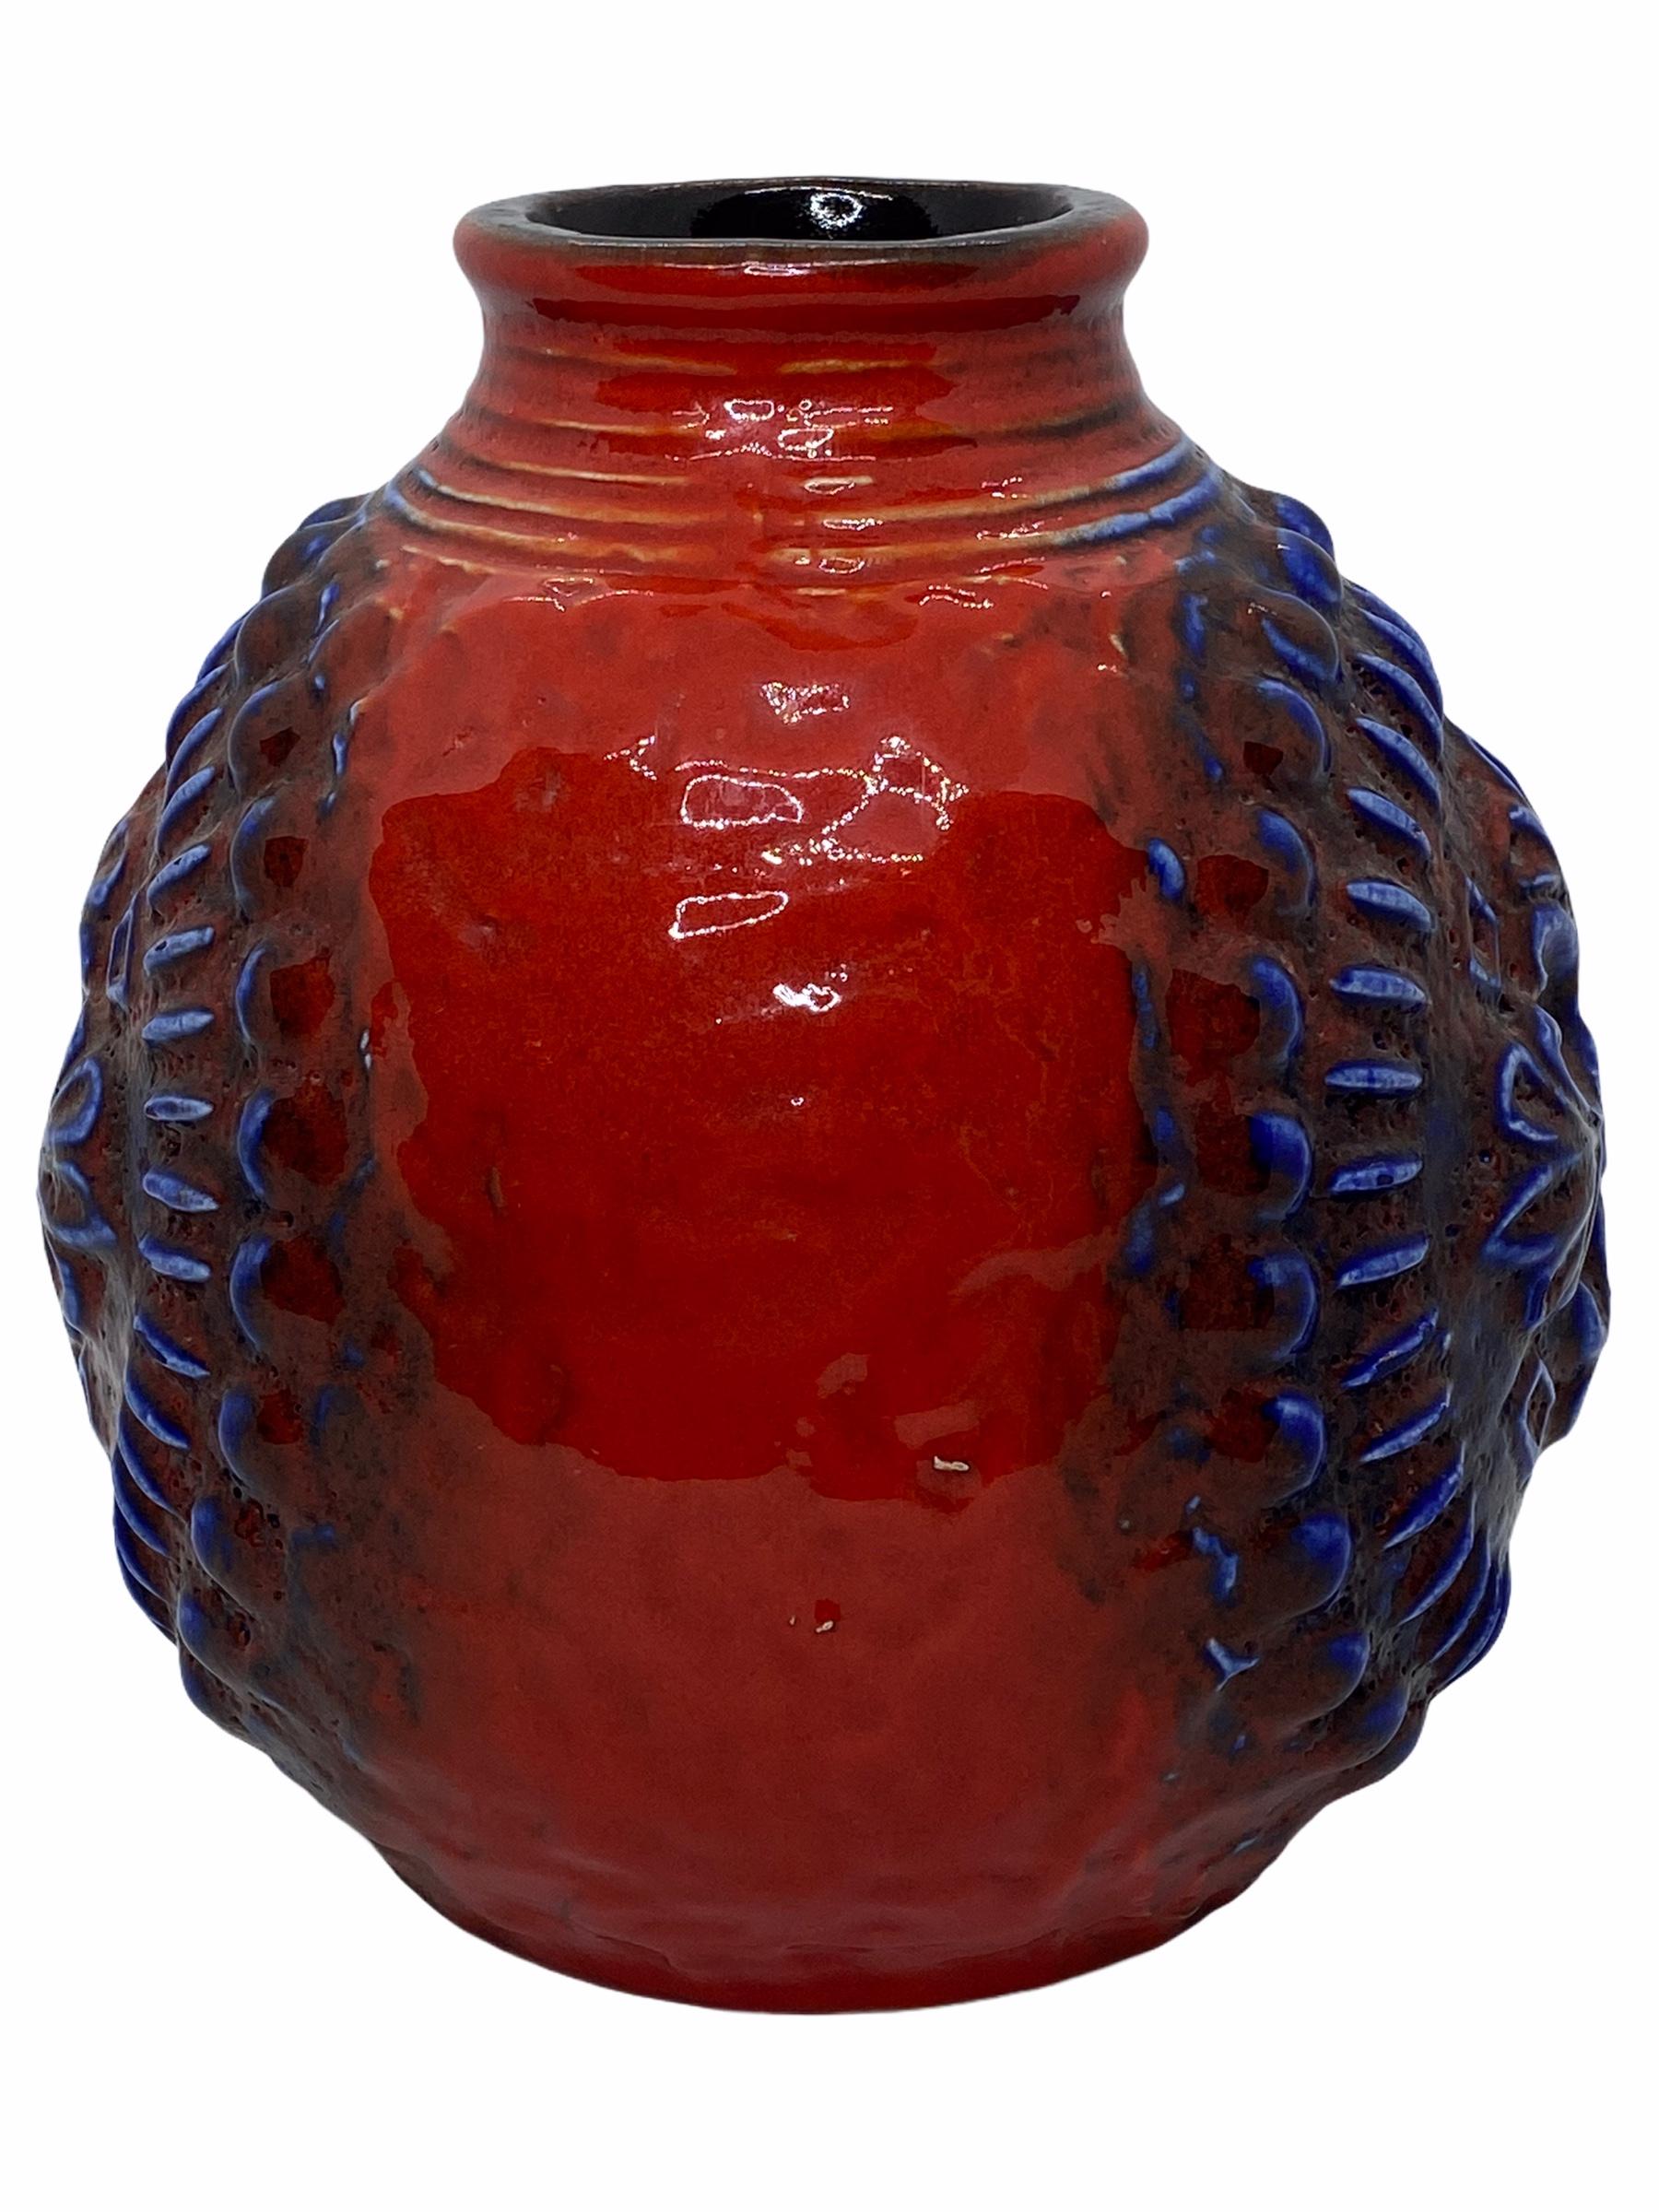 Eine erstaunliche Mitte des Jahrhunderts Studio Kunst Keramik Vase in Deutschland, ca. 1970er Jahren. Die Vase ist in sehr gutem Zustand, ohne Chips, Risse oder Flohbisse. Signiert mit Herstellerzeichen.